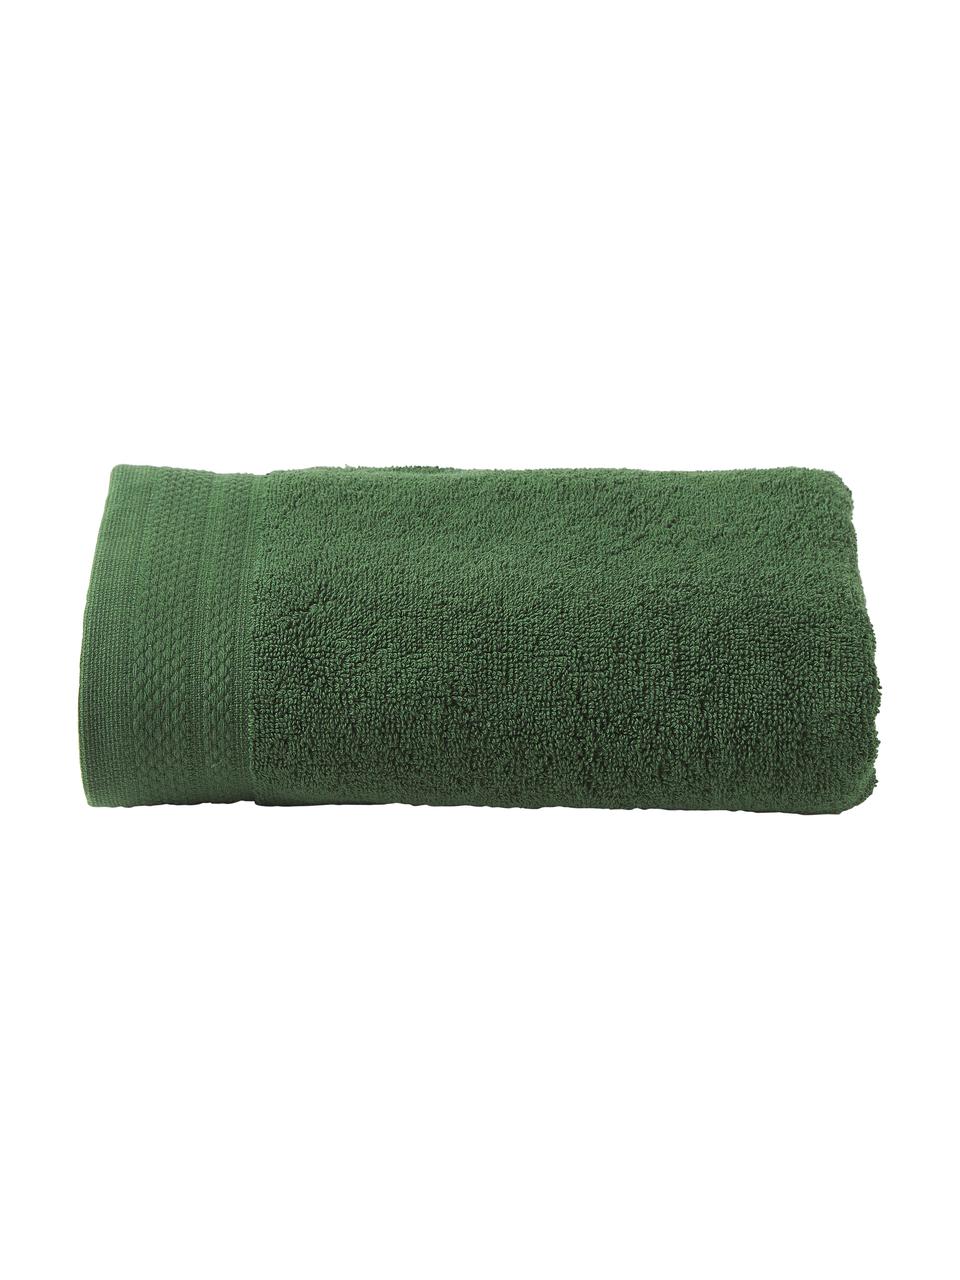 Asciugamano in varie misure Premium, 100% cotone organico certificato GOTS (da GCL International, GCL-300517).
Qualità pesante, 600 g/m², Verde scuro, Asciugamano, Larg. 50 x Lung. 100 cm